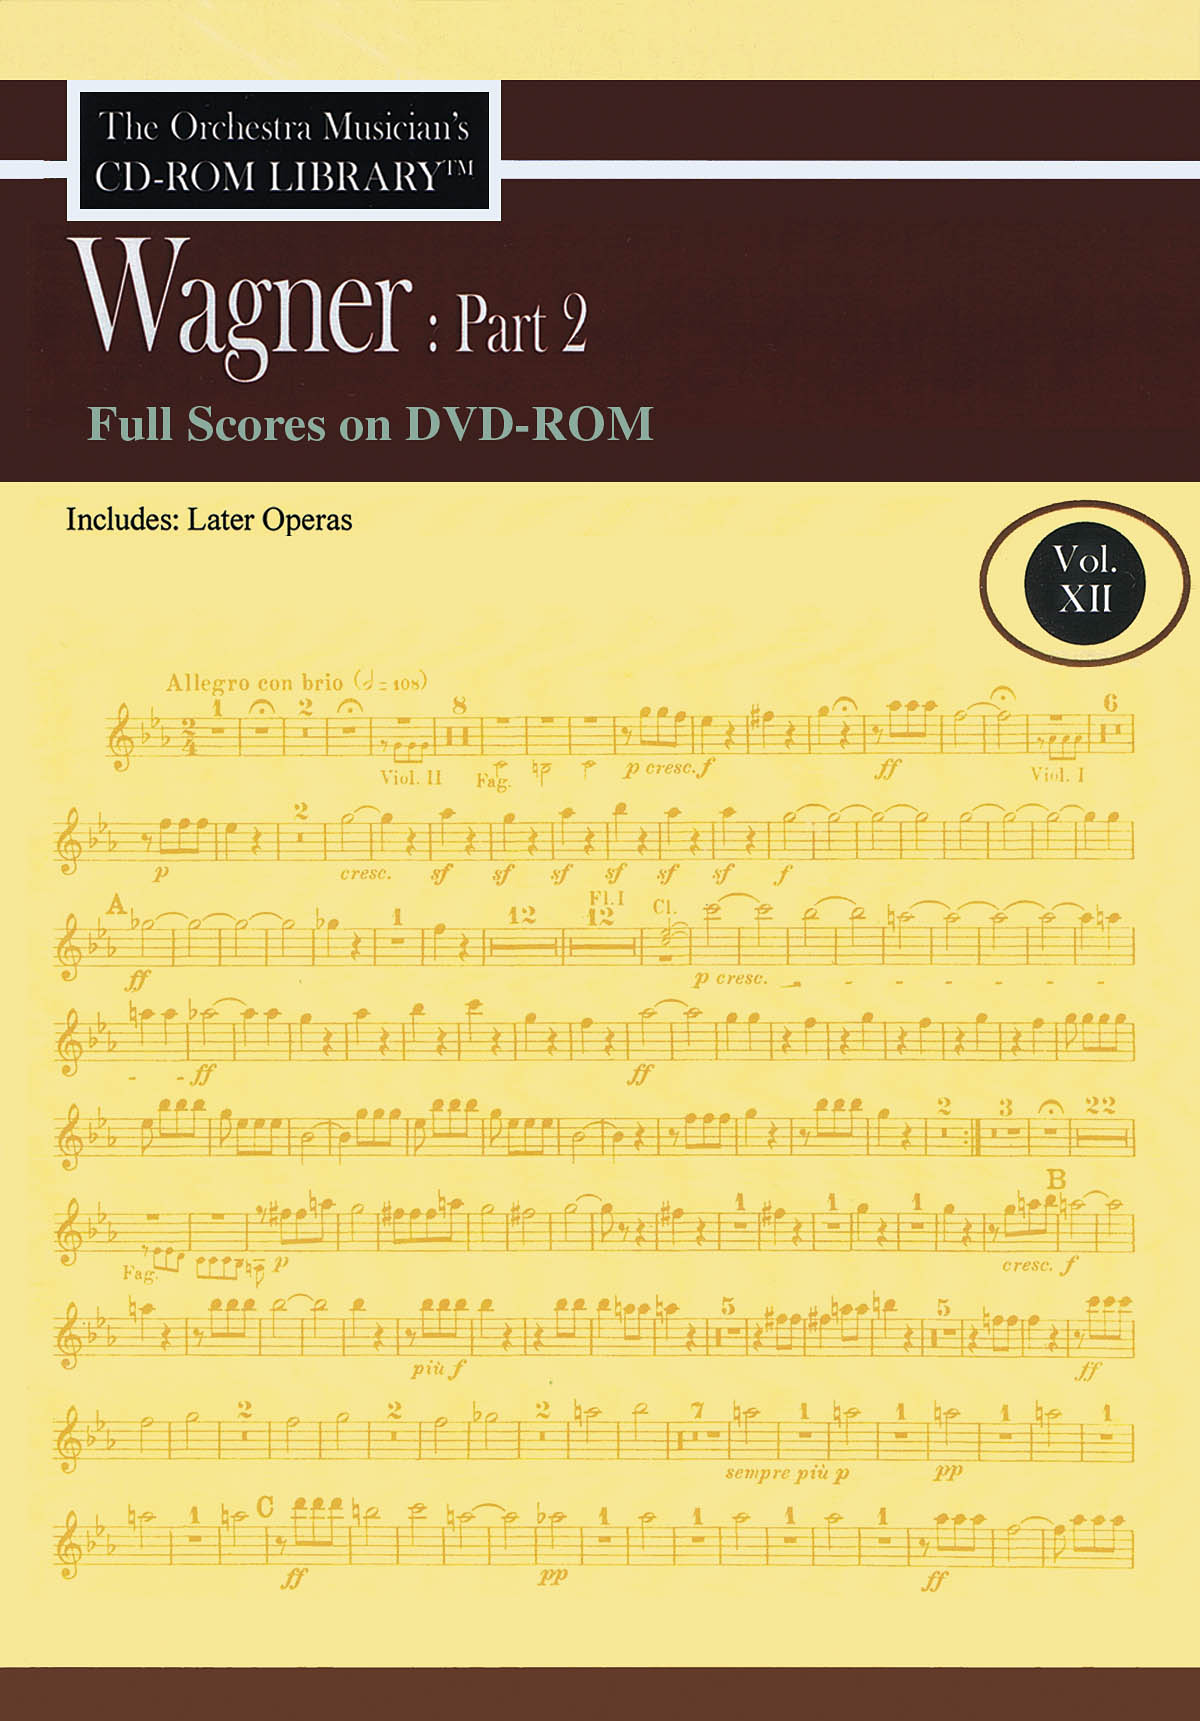 Wagner: Part 2 - Volume 12(Full Scores on DVD-ROM)